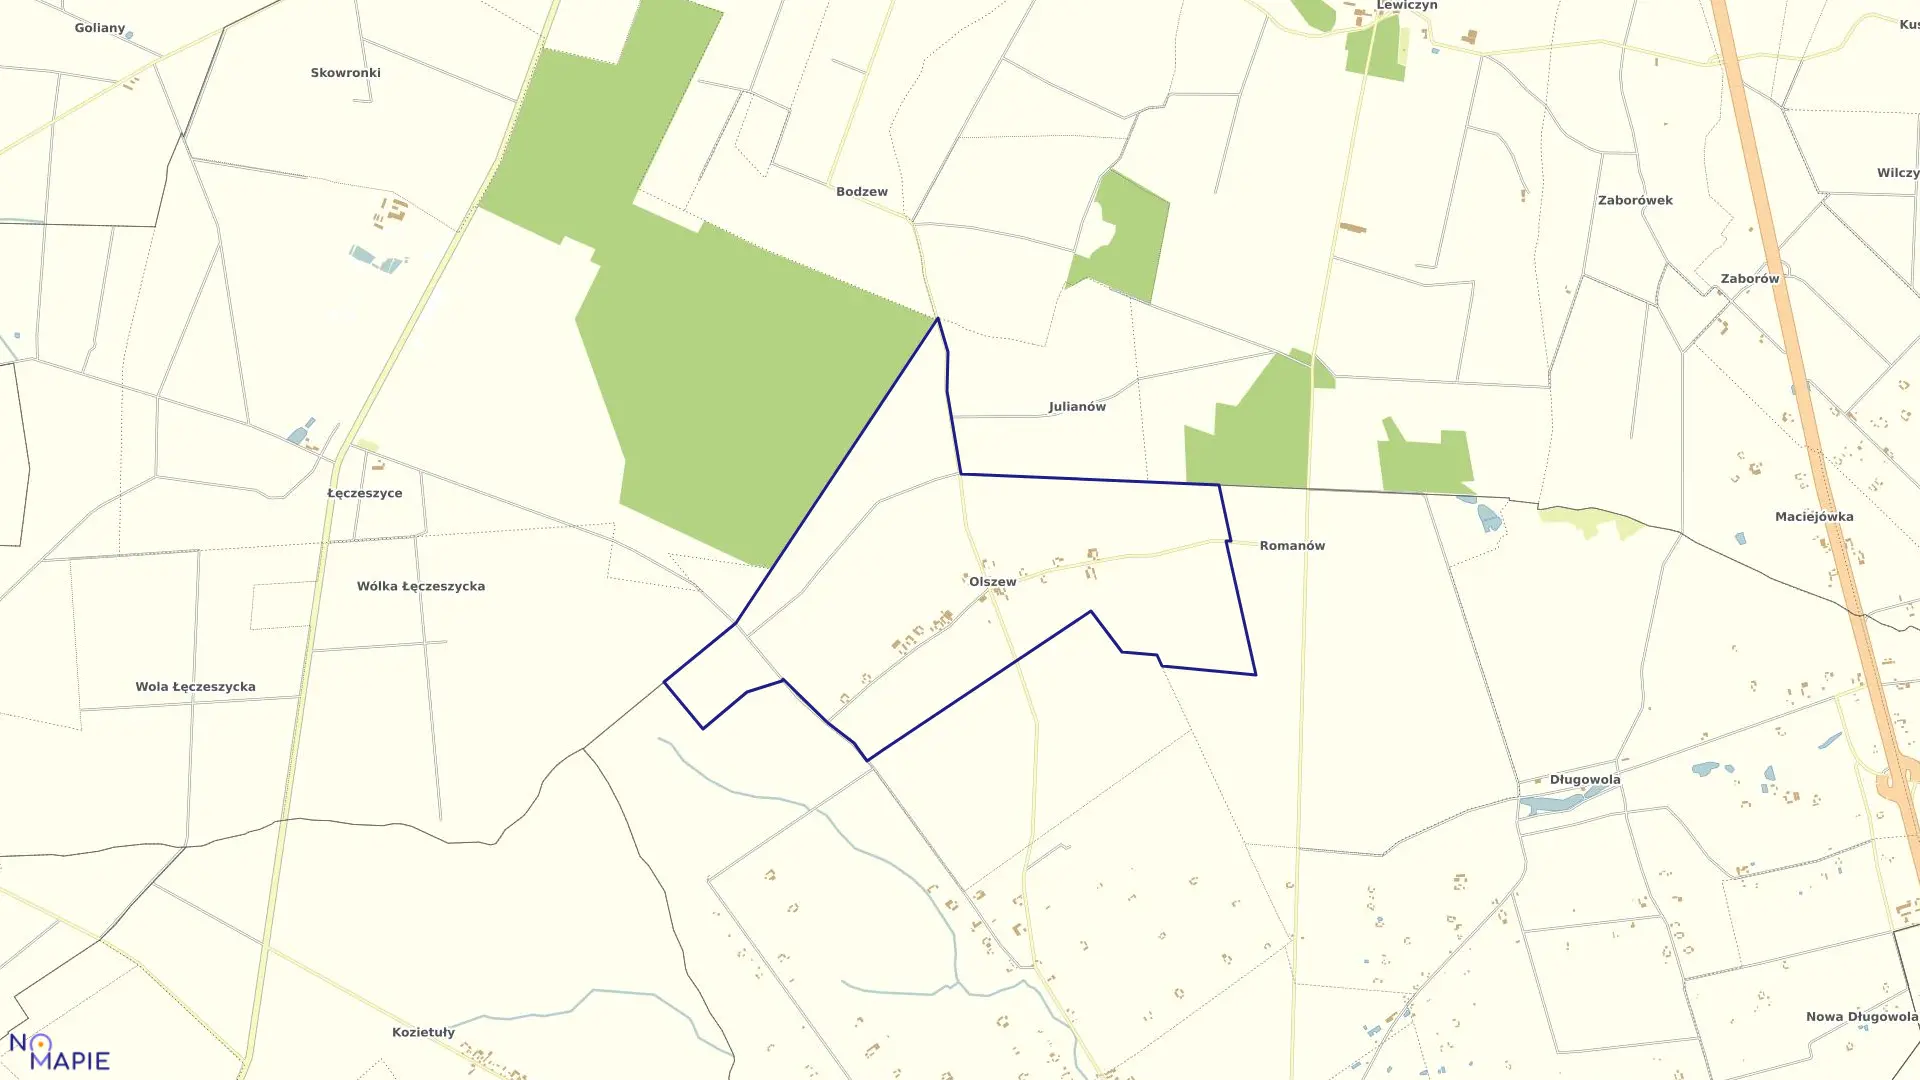 Mapa obrębu OLSZEW w gminie Goszczyn